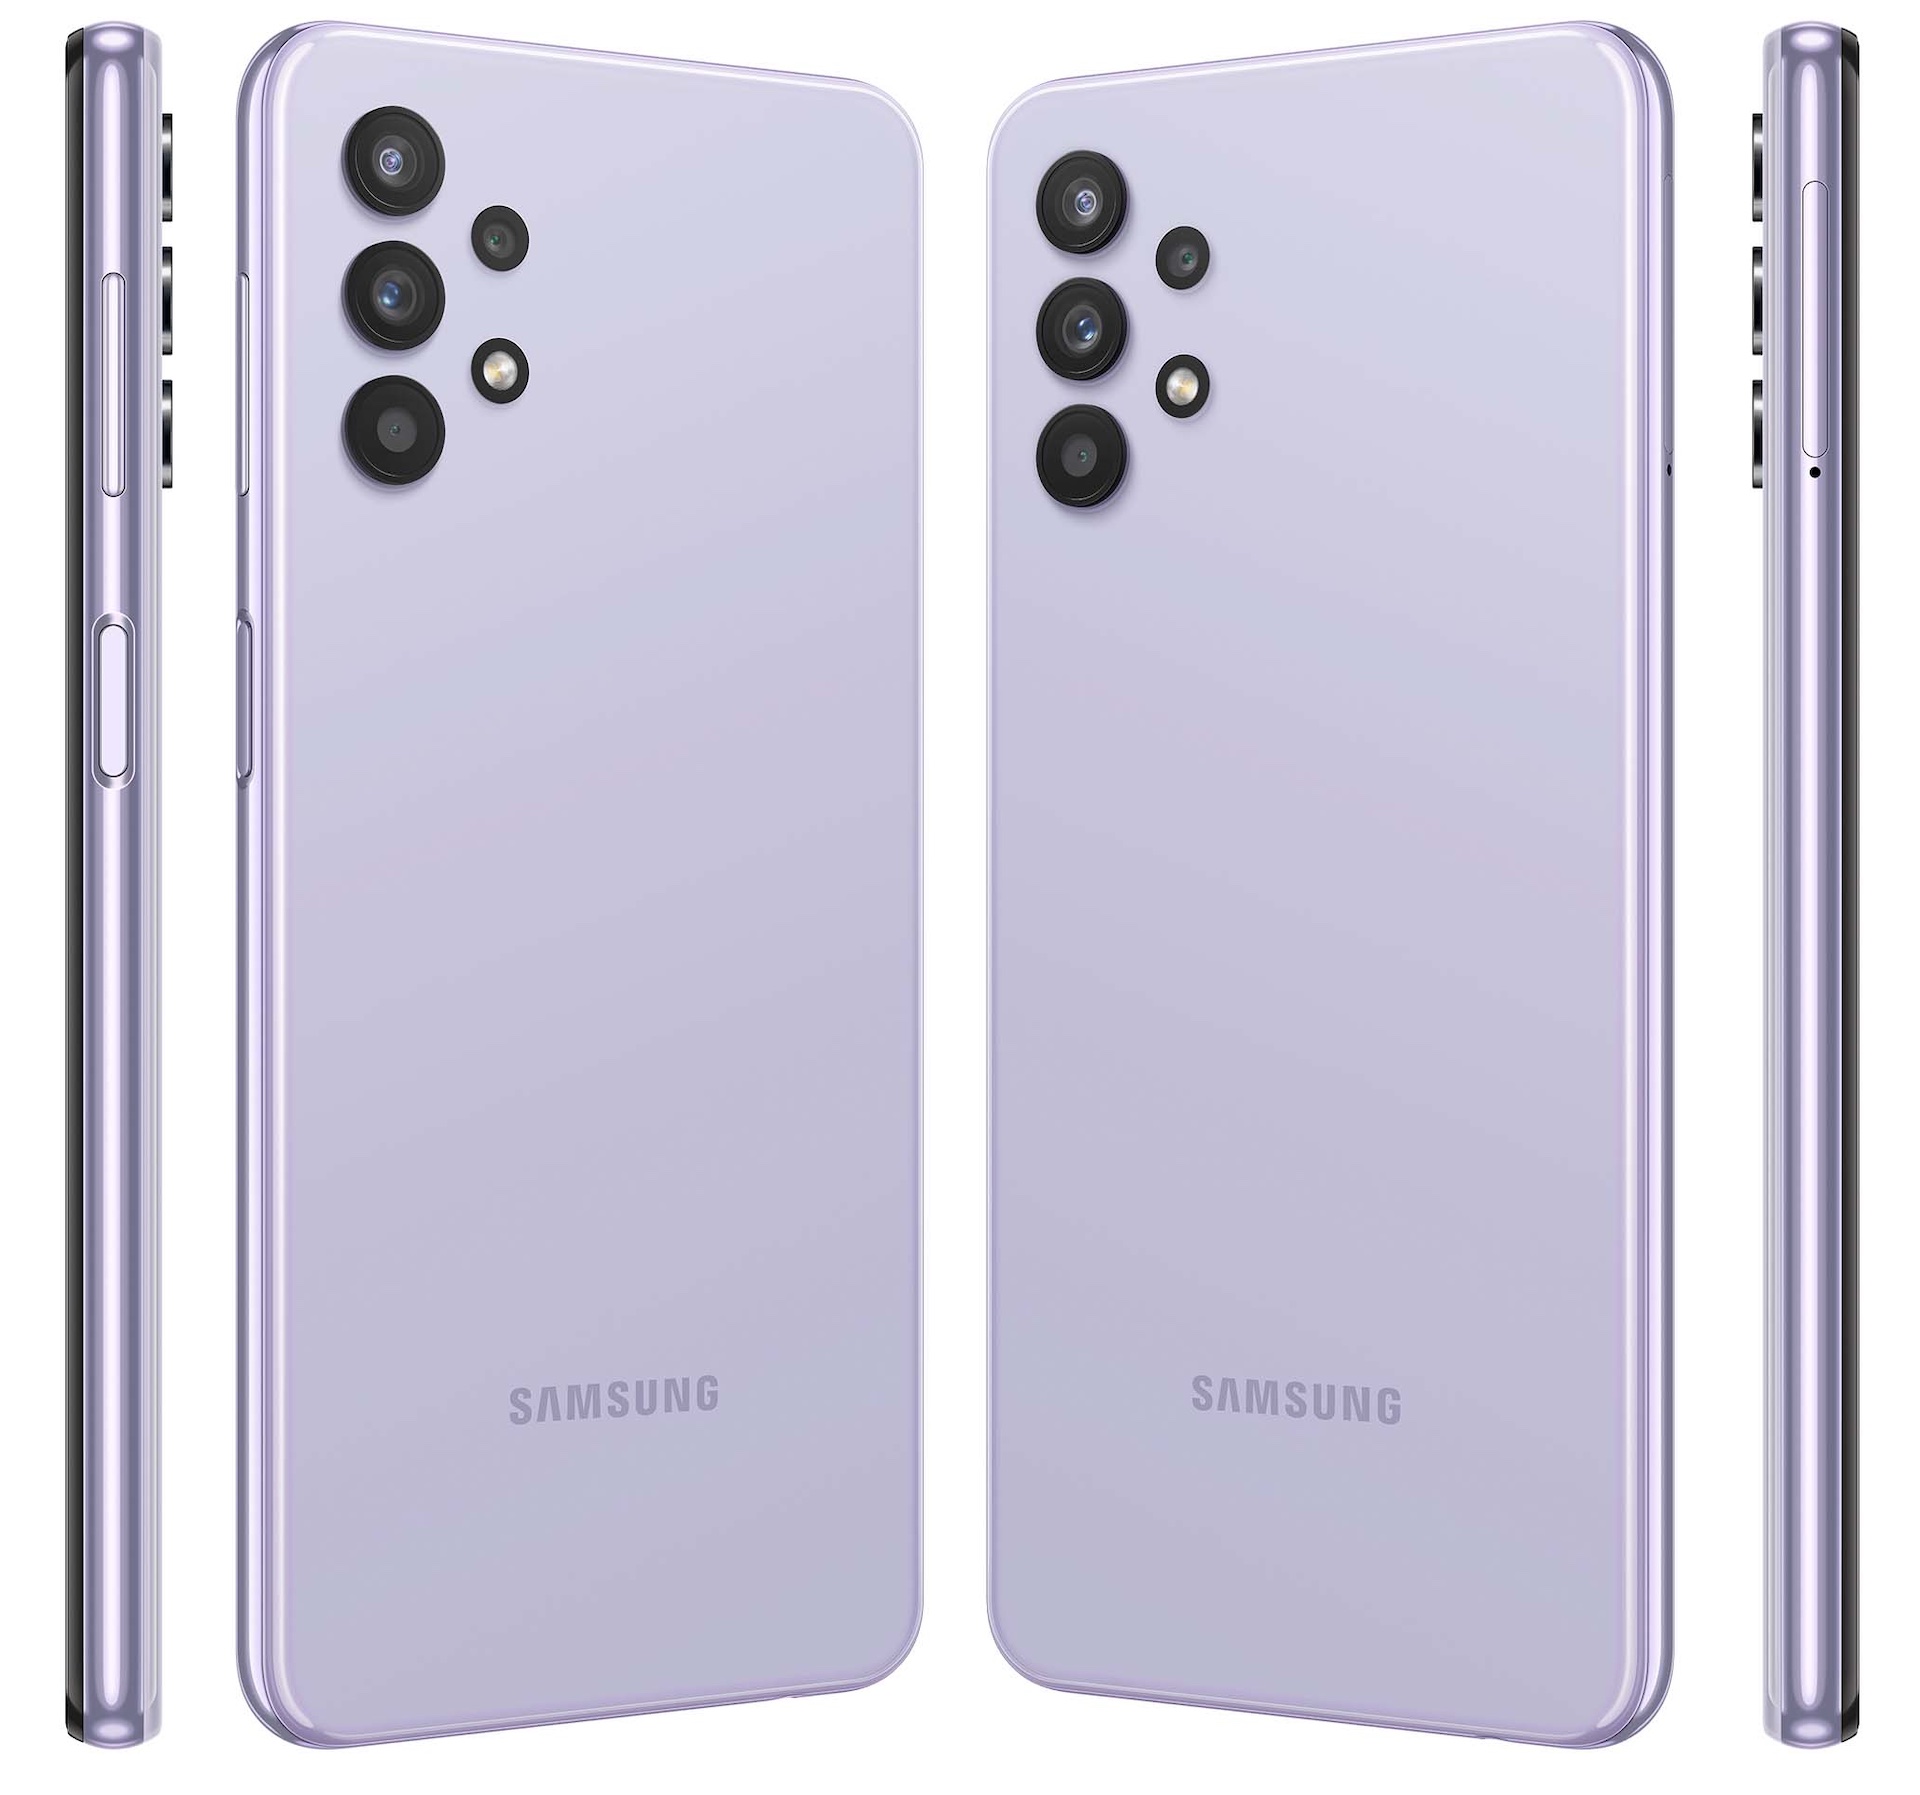 Samsung、より低価格な5G対応スマホ「Galaxy A32 5G」を発表！欧州では299ユーロで2月発売。日本でも発売へ - S-MAX